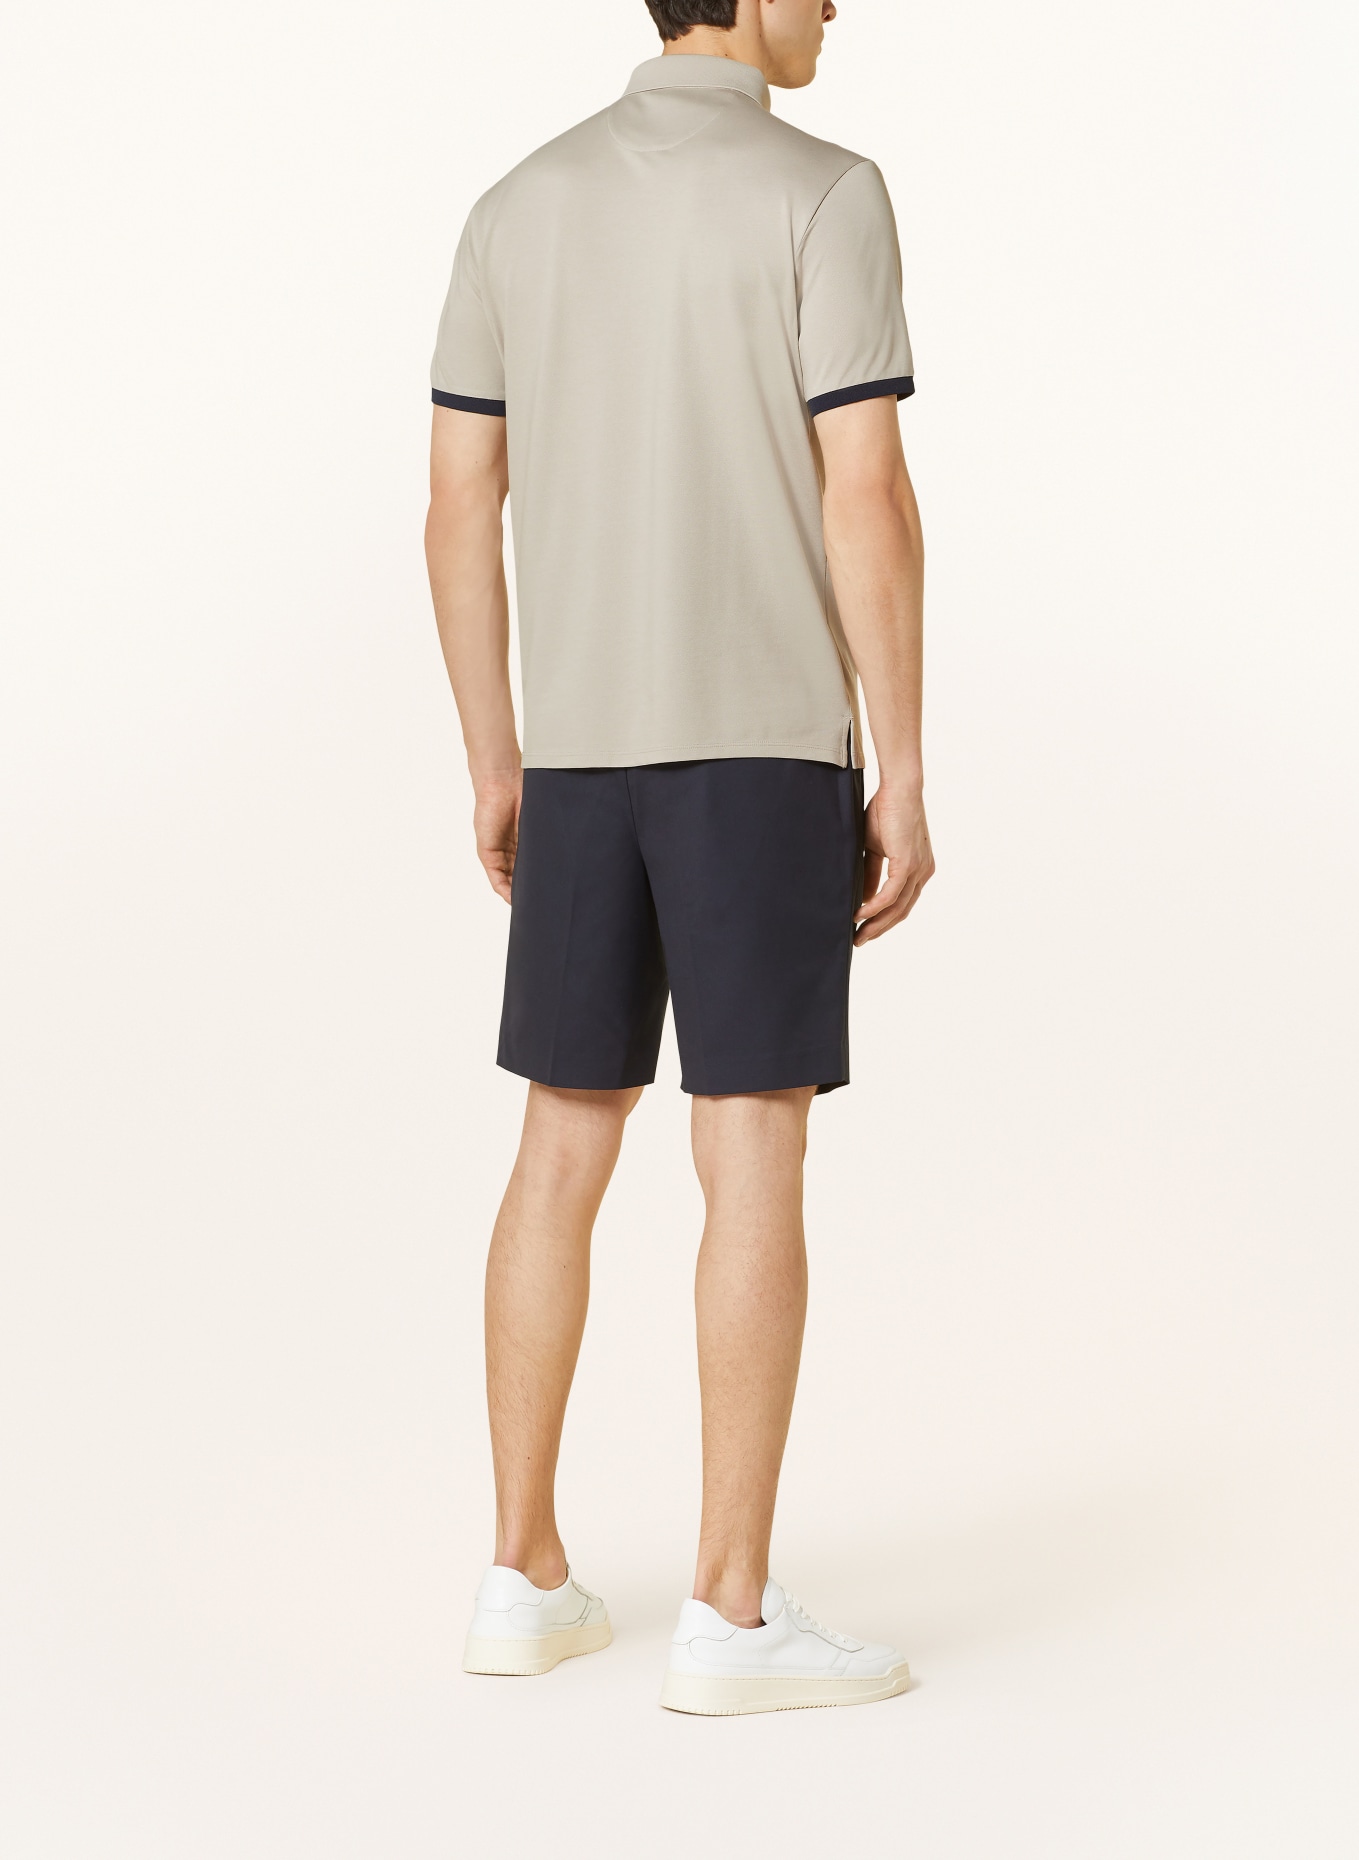 RAGMAN Piqué polo shirt modern fit, Color: BEIGE (Image 3)